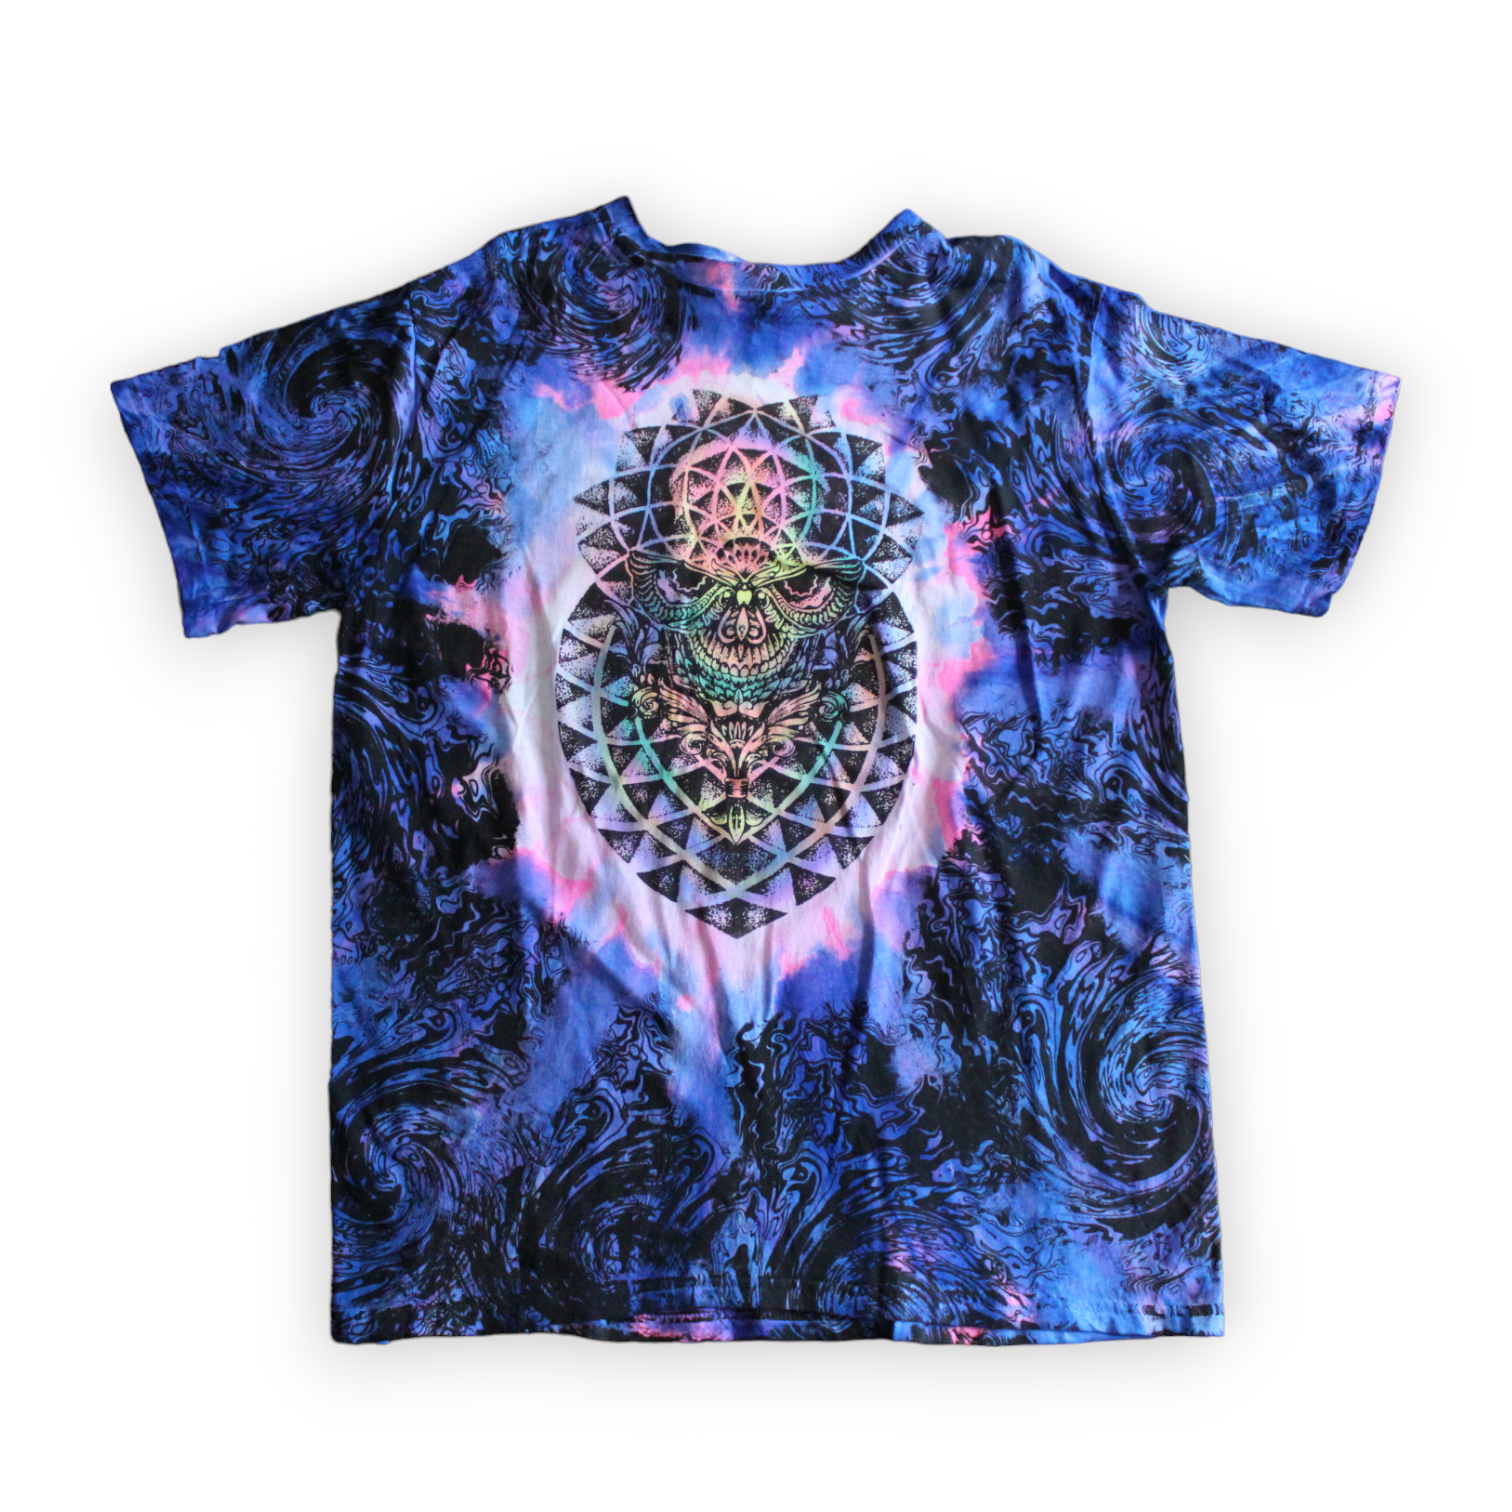 Cosmic skull sacred geometry t-shirt 